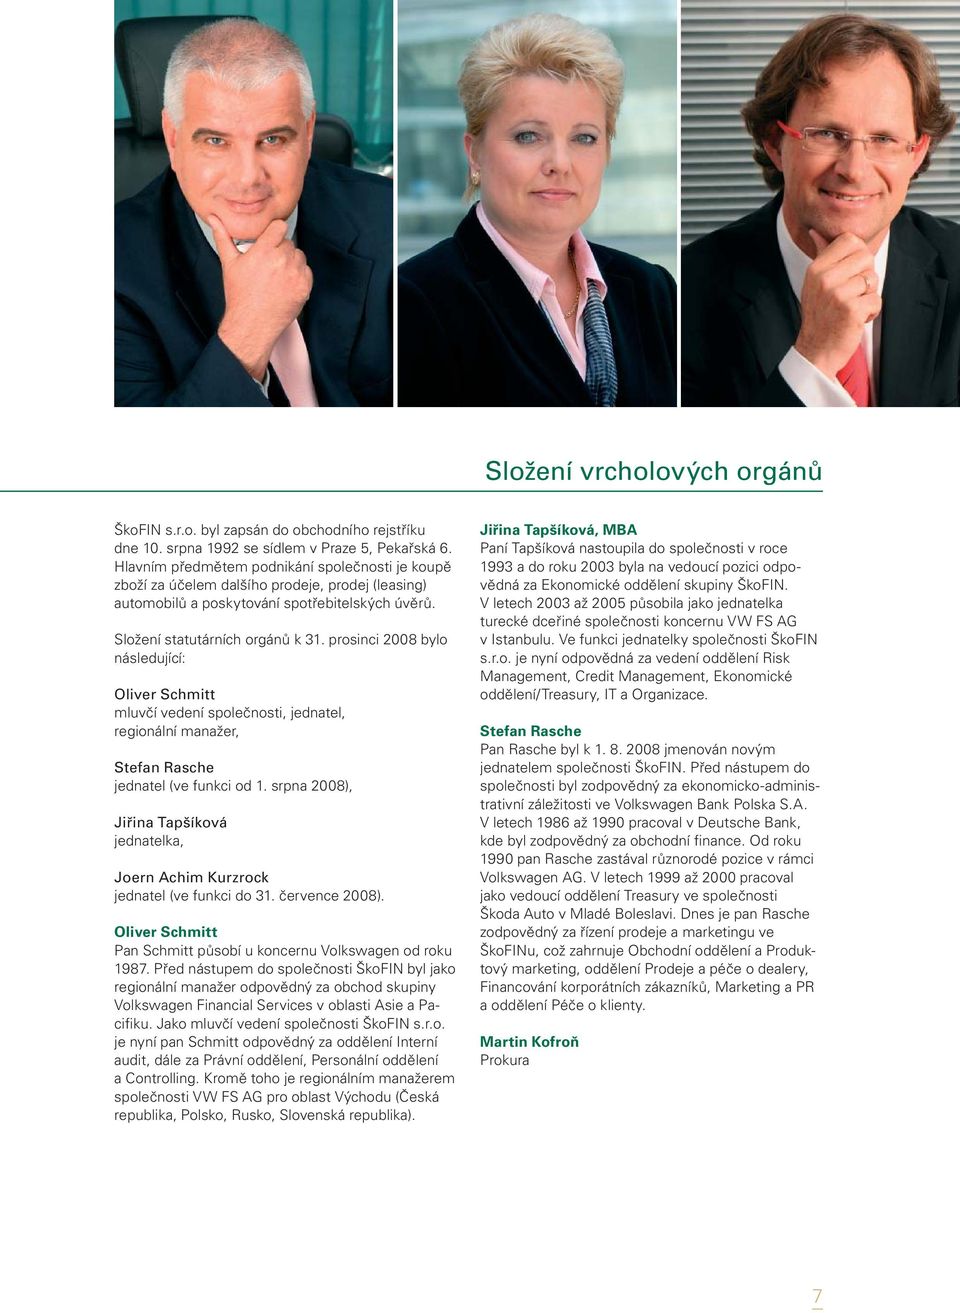 prosinci 2008 bylo následující: Oliver Schmitt mluvčí vedení společnosti, jednatel, regionální manažer, Stefan Rasche jednatel (ve funkci od 1.